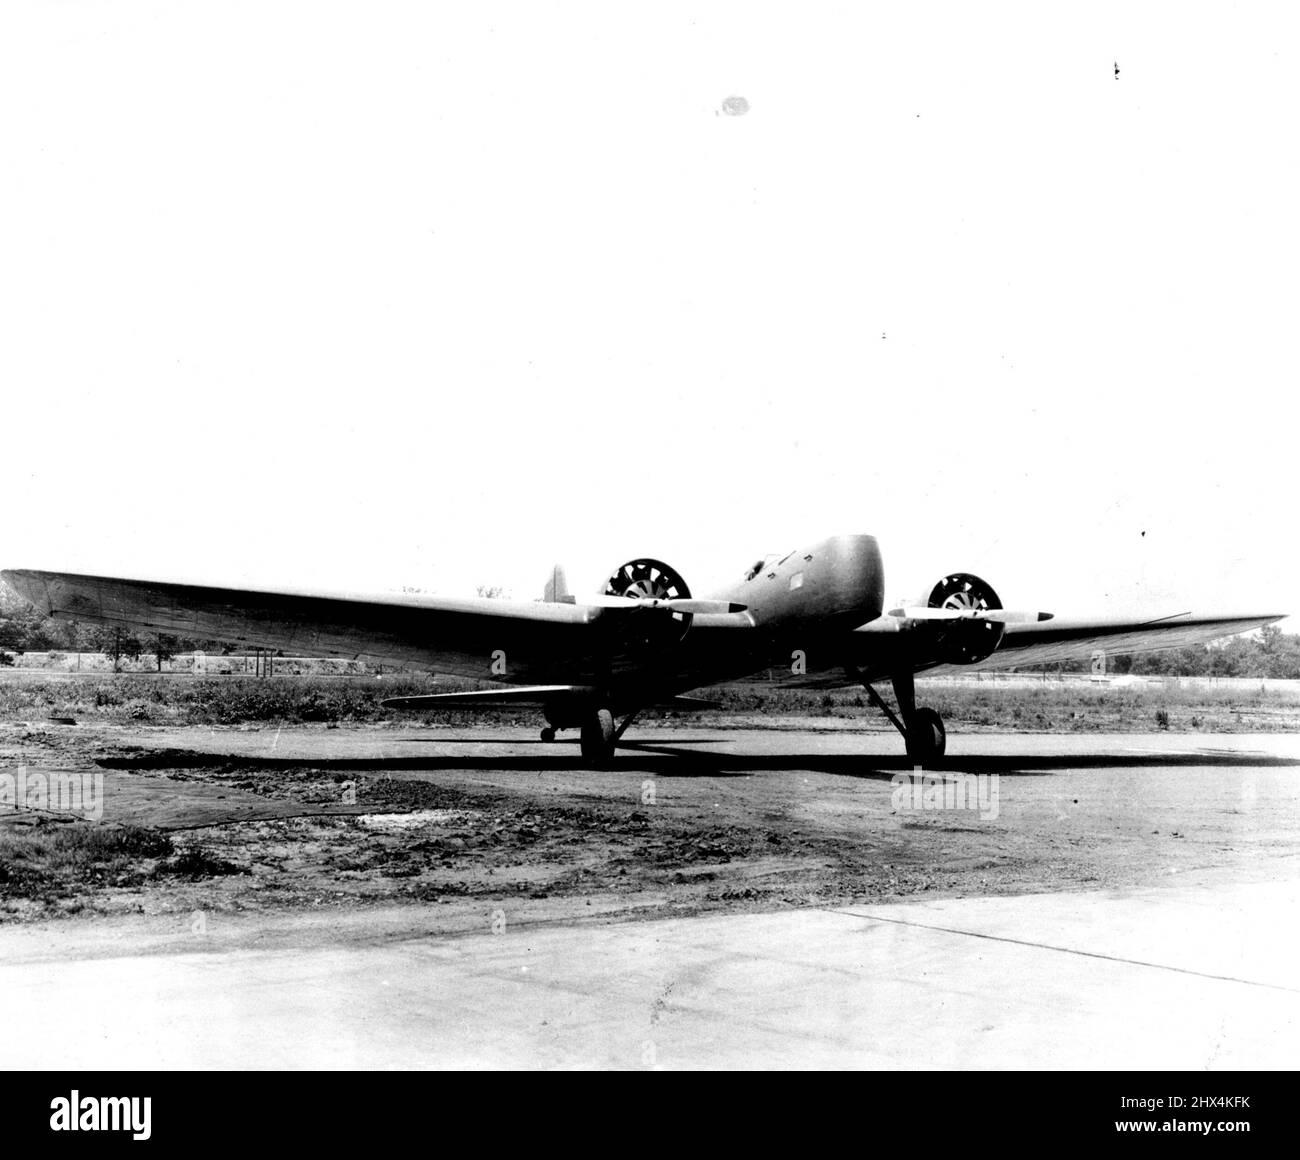 Neuer Swift Bomber des U.S. Army Air Corps -- die Nachrichtenübernahme des united States Army Air Corps, eines schweren Bombers, der ein niederflügeliges Boeing-Einflugzeug mit einziehbaren Landeanhörungen ist. Das schnelle Flugzeug wird mit zwei Pratt-Whitney „Hornet“-Motoren angetrieben, die jeweils 575 PS entwickeln. Der Bomber, bekannt als der 8-9, trägt eine vierköpfige Besatzung, einen Schützenbomber, in der Nase; einen Piloten hinter ihm, und zwei Männer im hinteren Cockpit, einen Schützen-Co-***** , Und ein Funker. Sieben dieser Flugzeuge wurden für die Luftwaffe der Armee gekauft. 27. November 1931. (Foto von International Newsreel Photo) Stockfoto